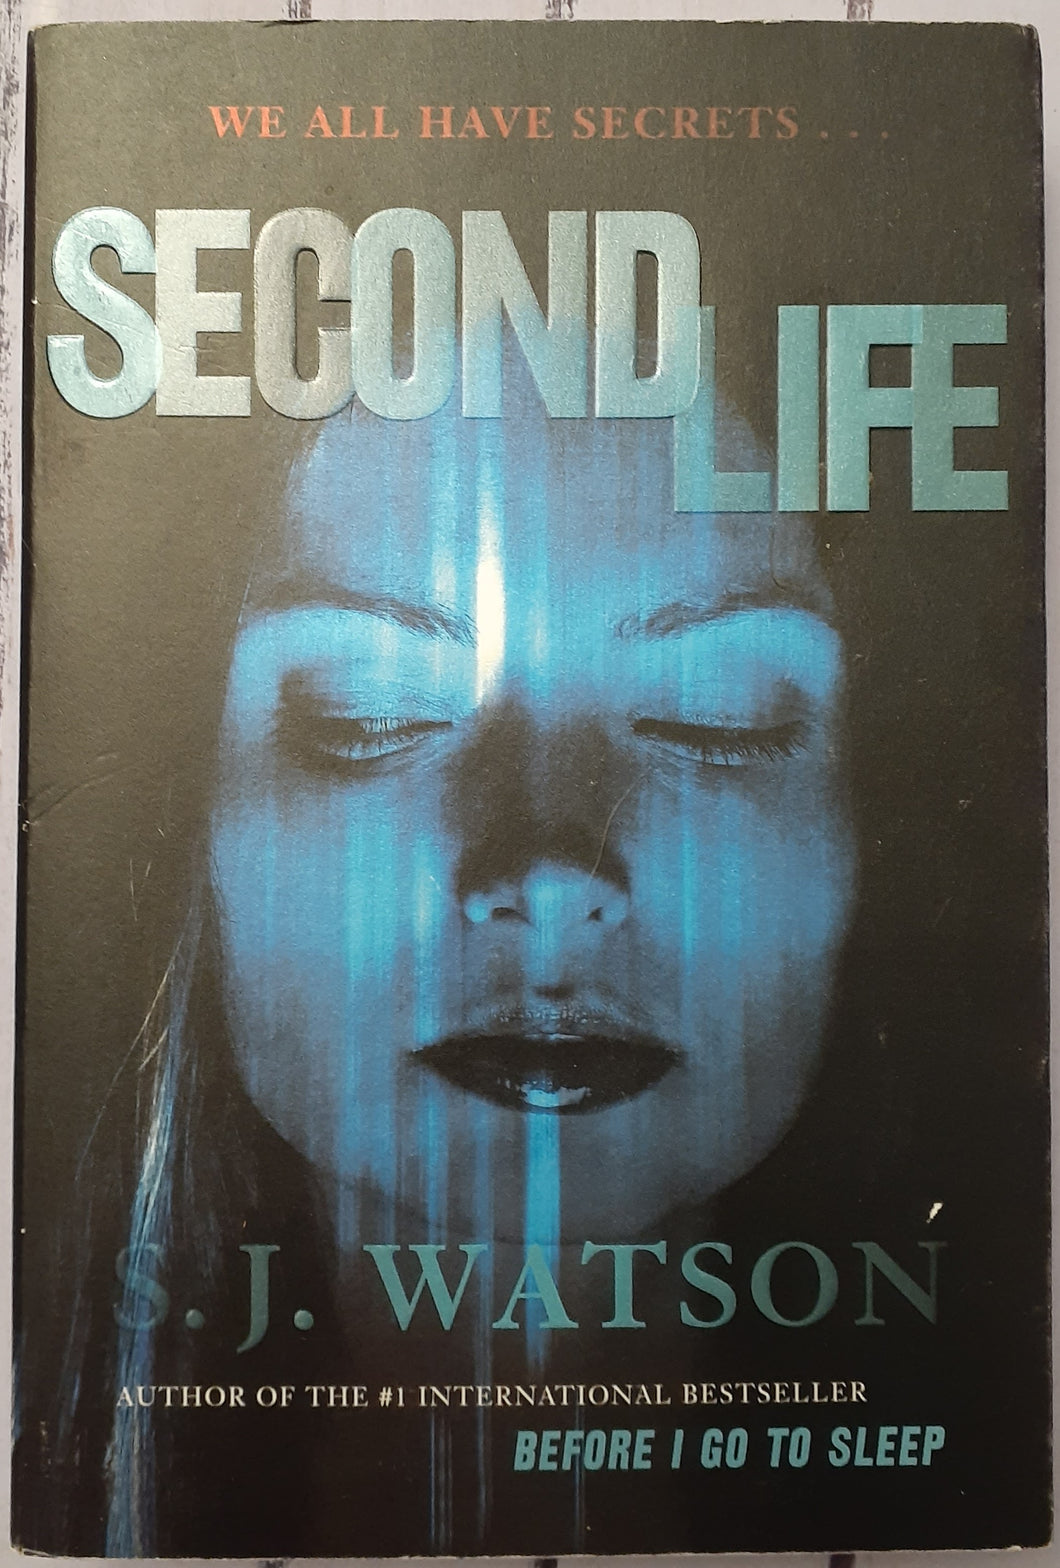 Second Life: A Novel